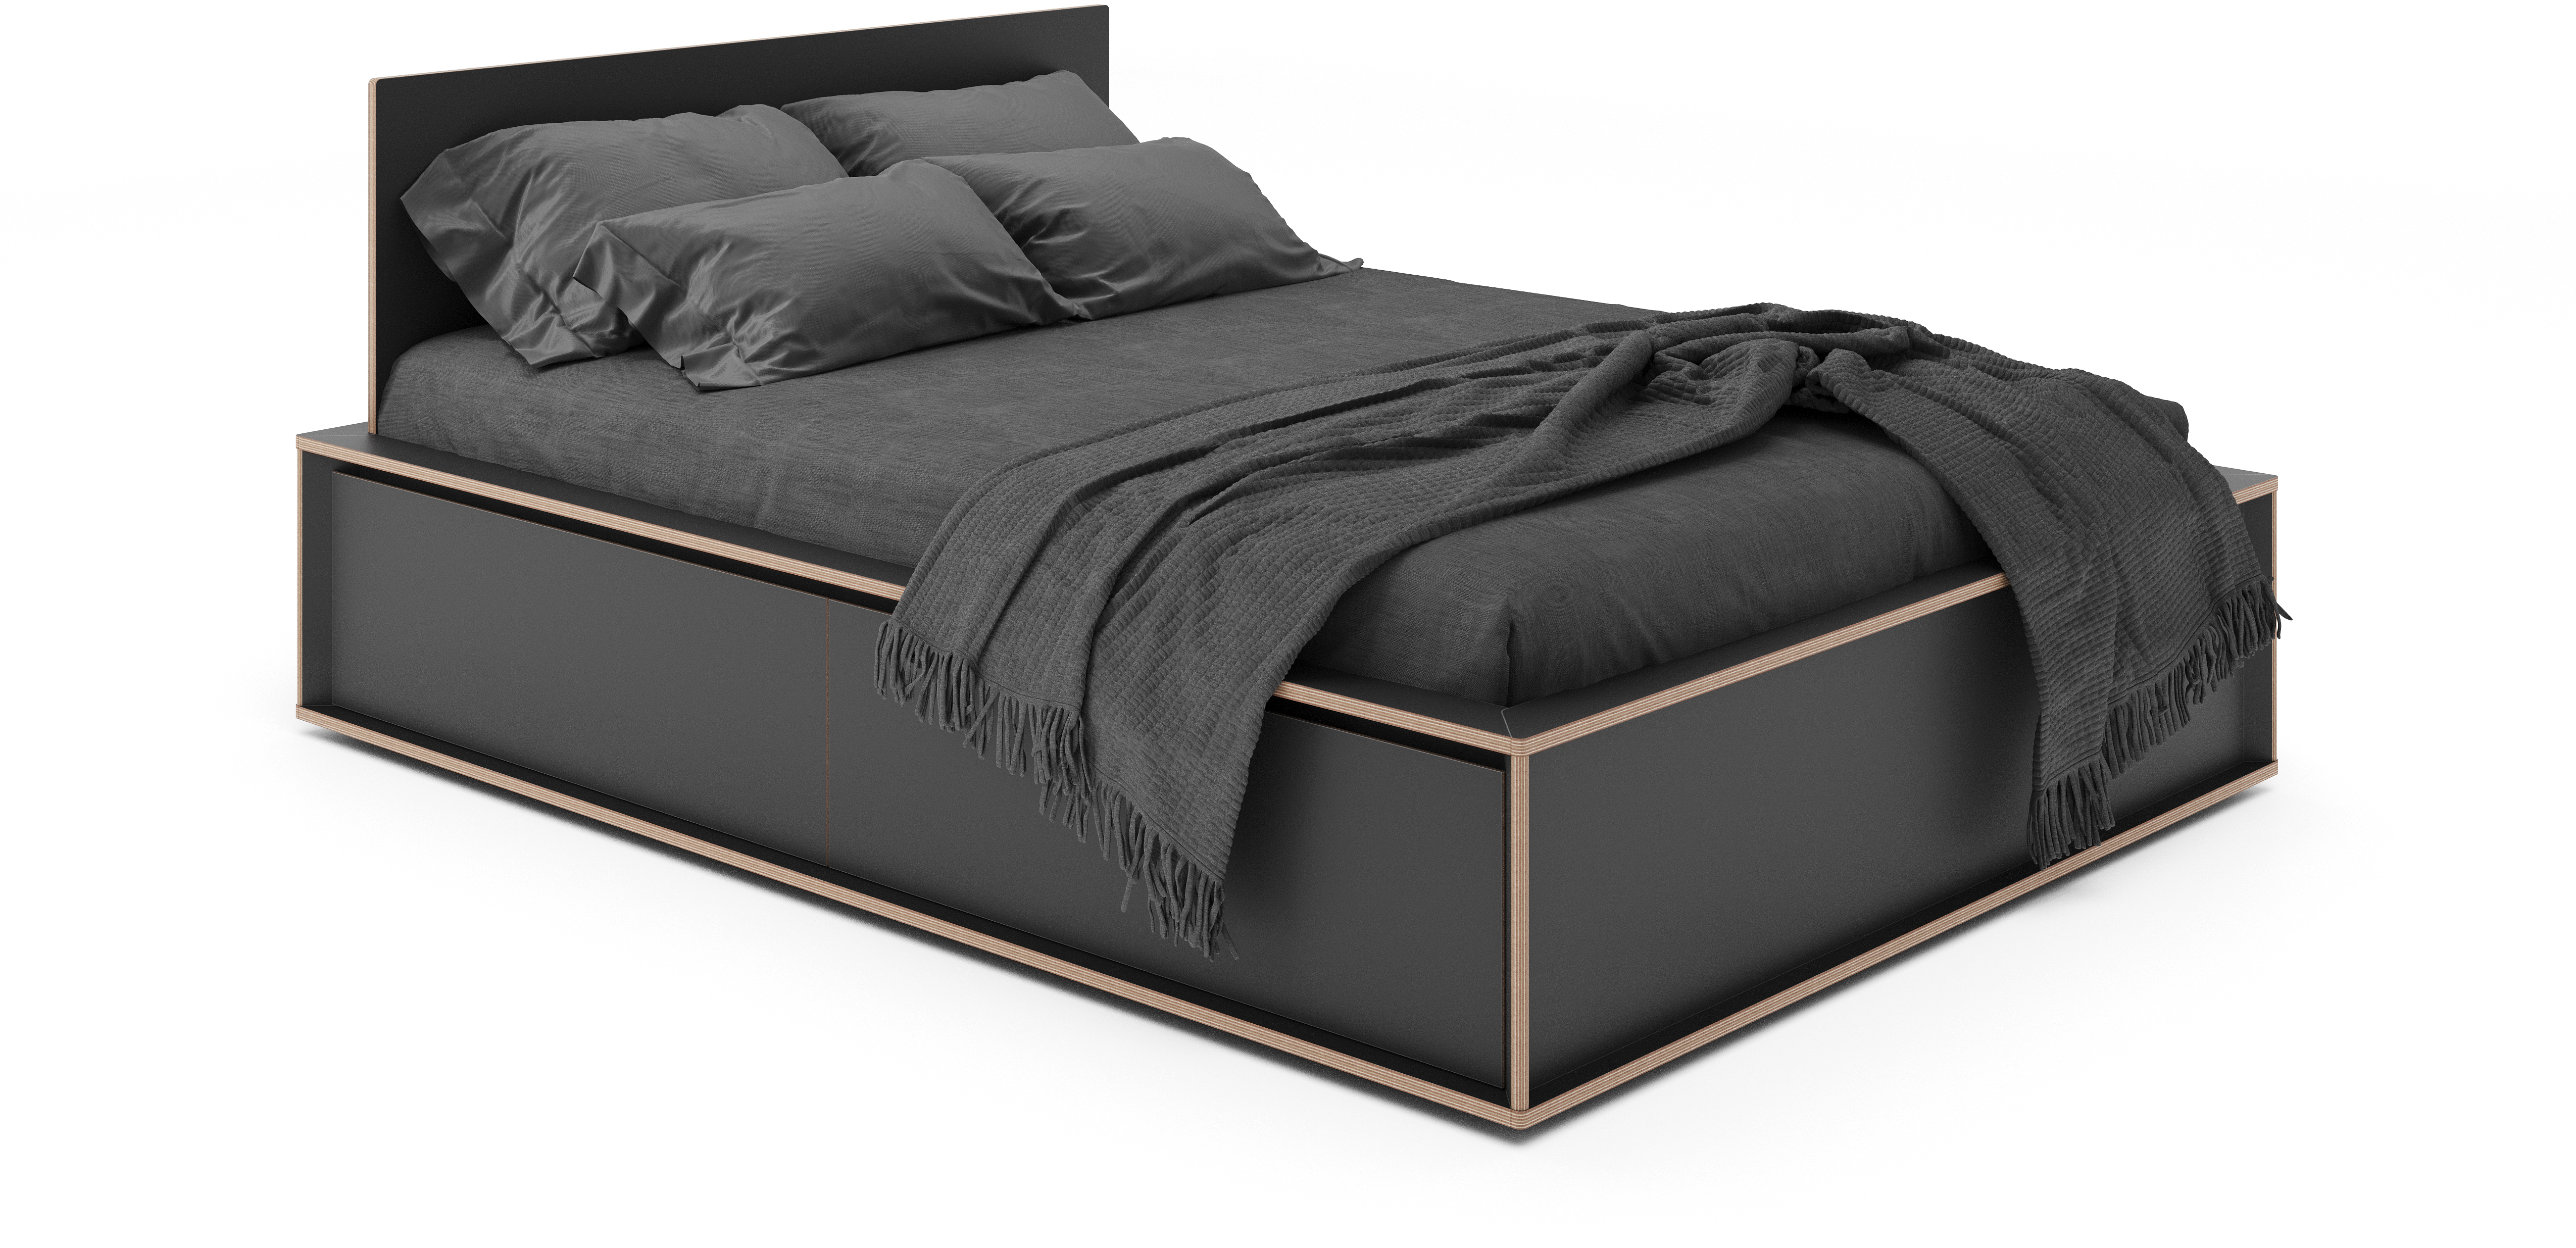 SPAZE Bett mit Kopfteil mit 3 Schubkästen - KAQTU Design